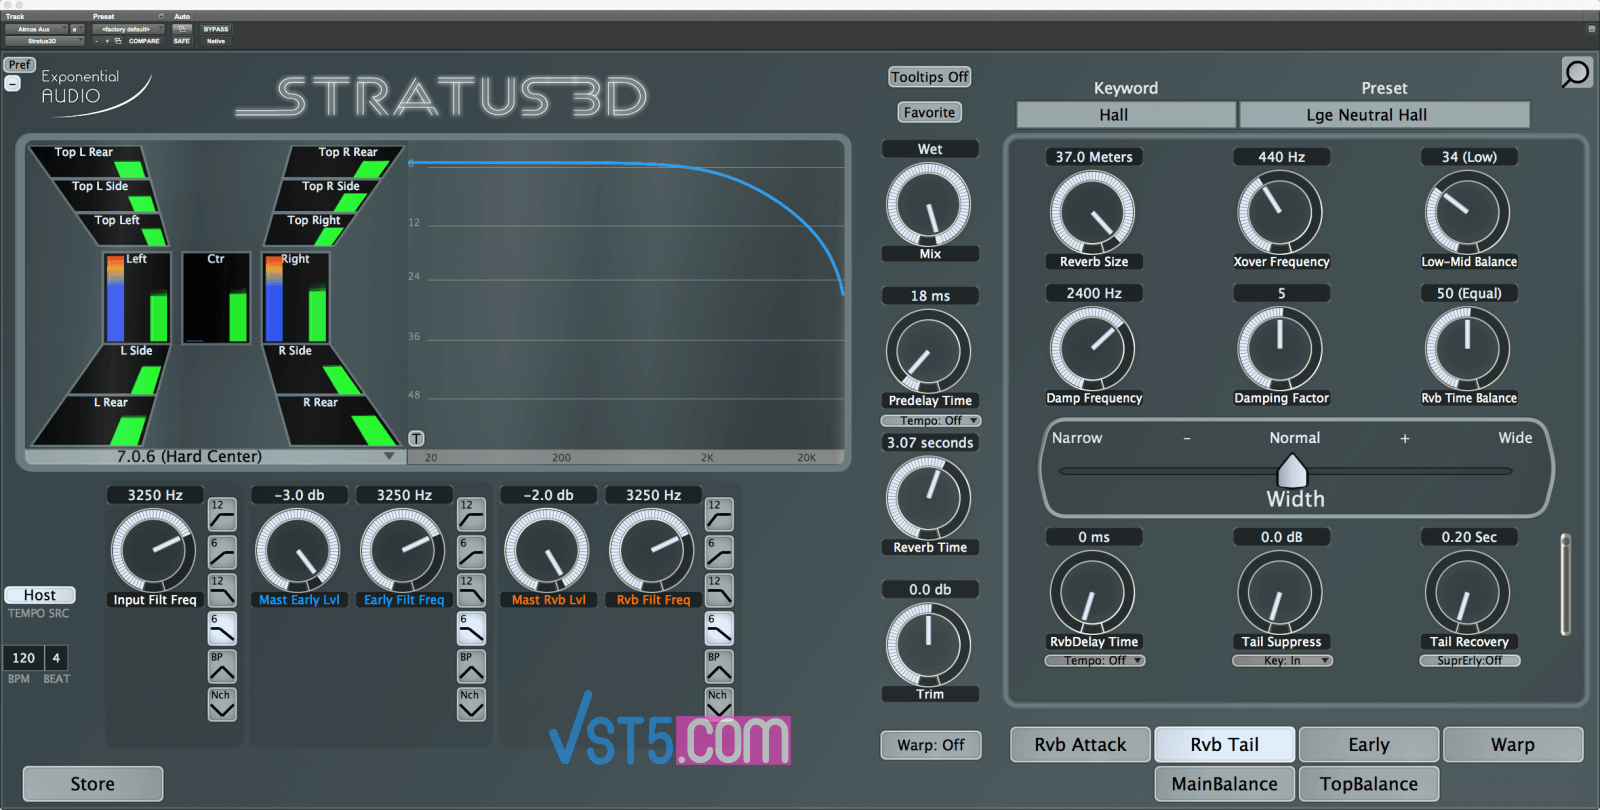 Exponential Audio Stratus 3D v3.1.0-R2R-VST5-娱乐音频资源分享平台